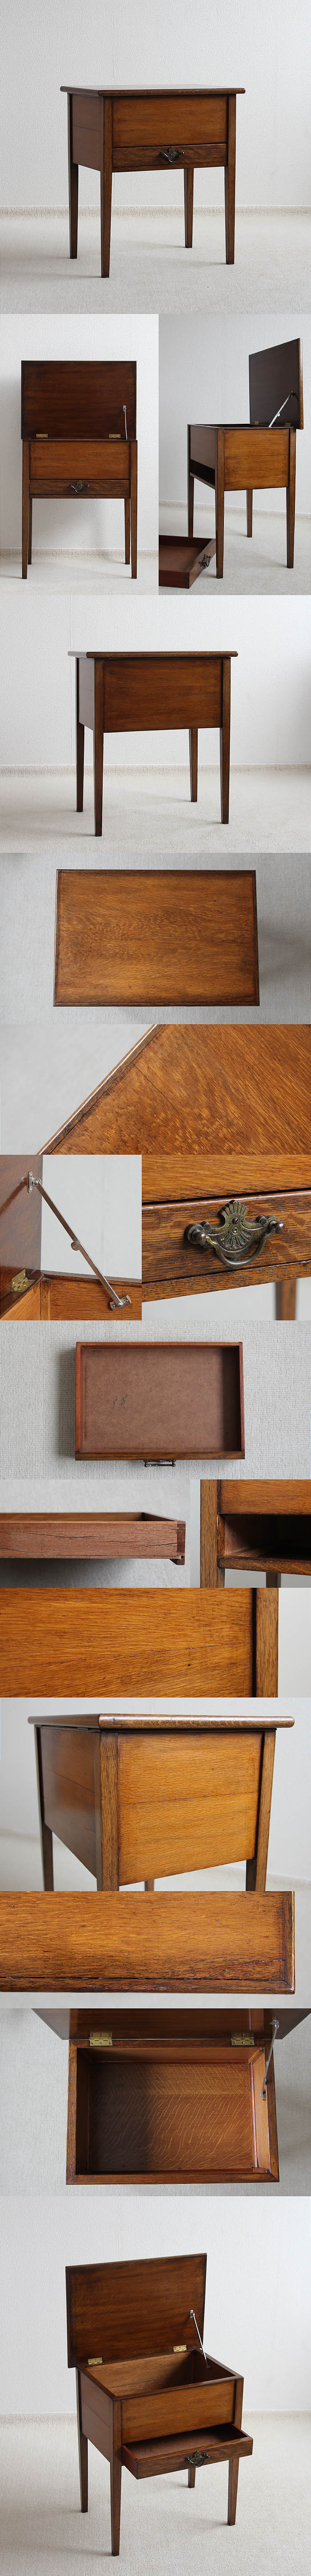 イギリス アンティーク調 ドロワー付きサイドテーブル 木製 裁縫箱 家具「収納ボックス」P-072